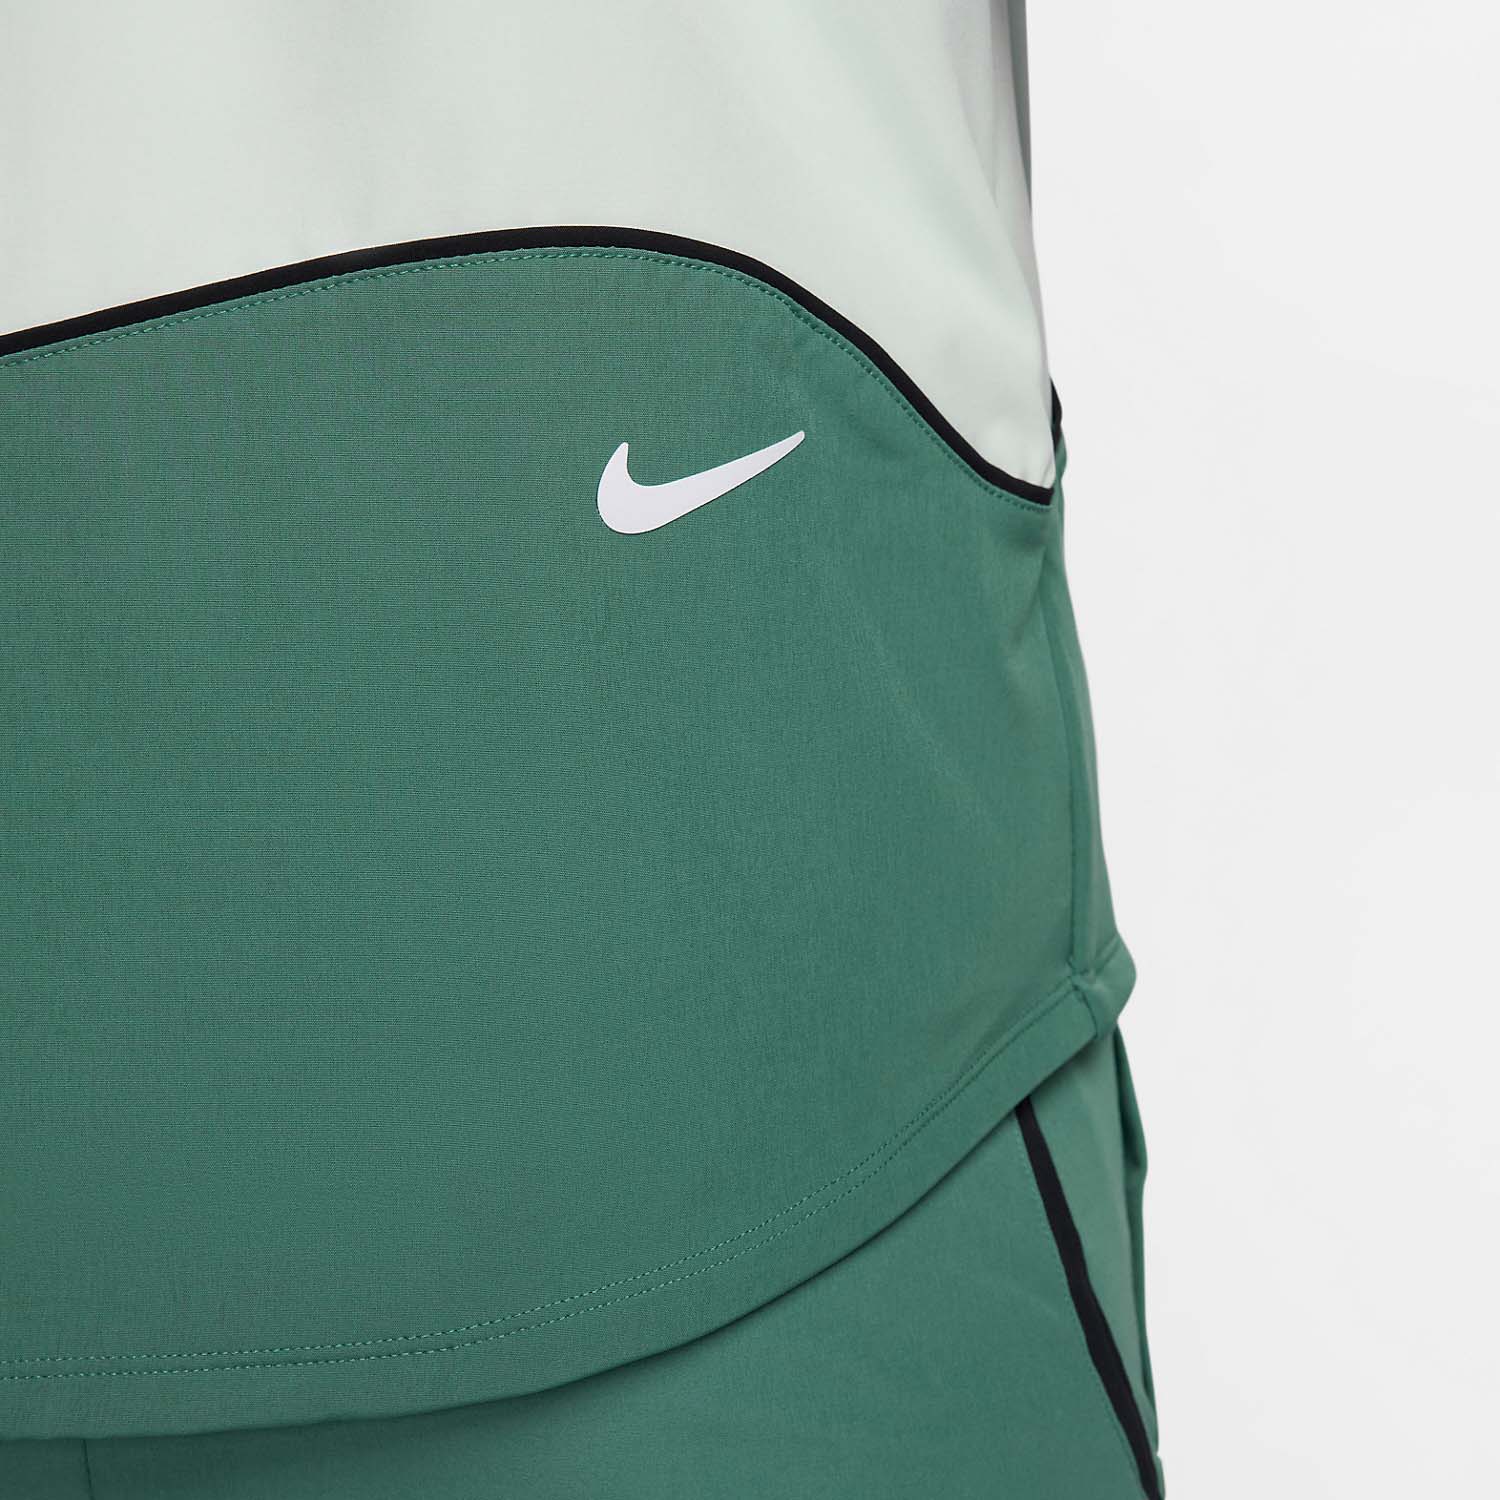 Nike Court Advantage Chaqueta - Bicoastal/Black/Barely Green/White